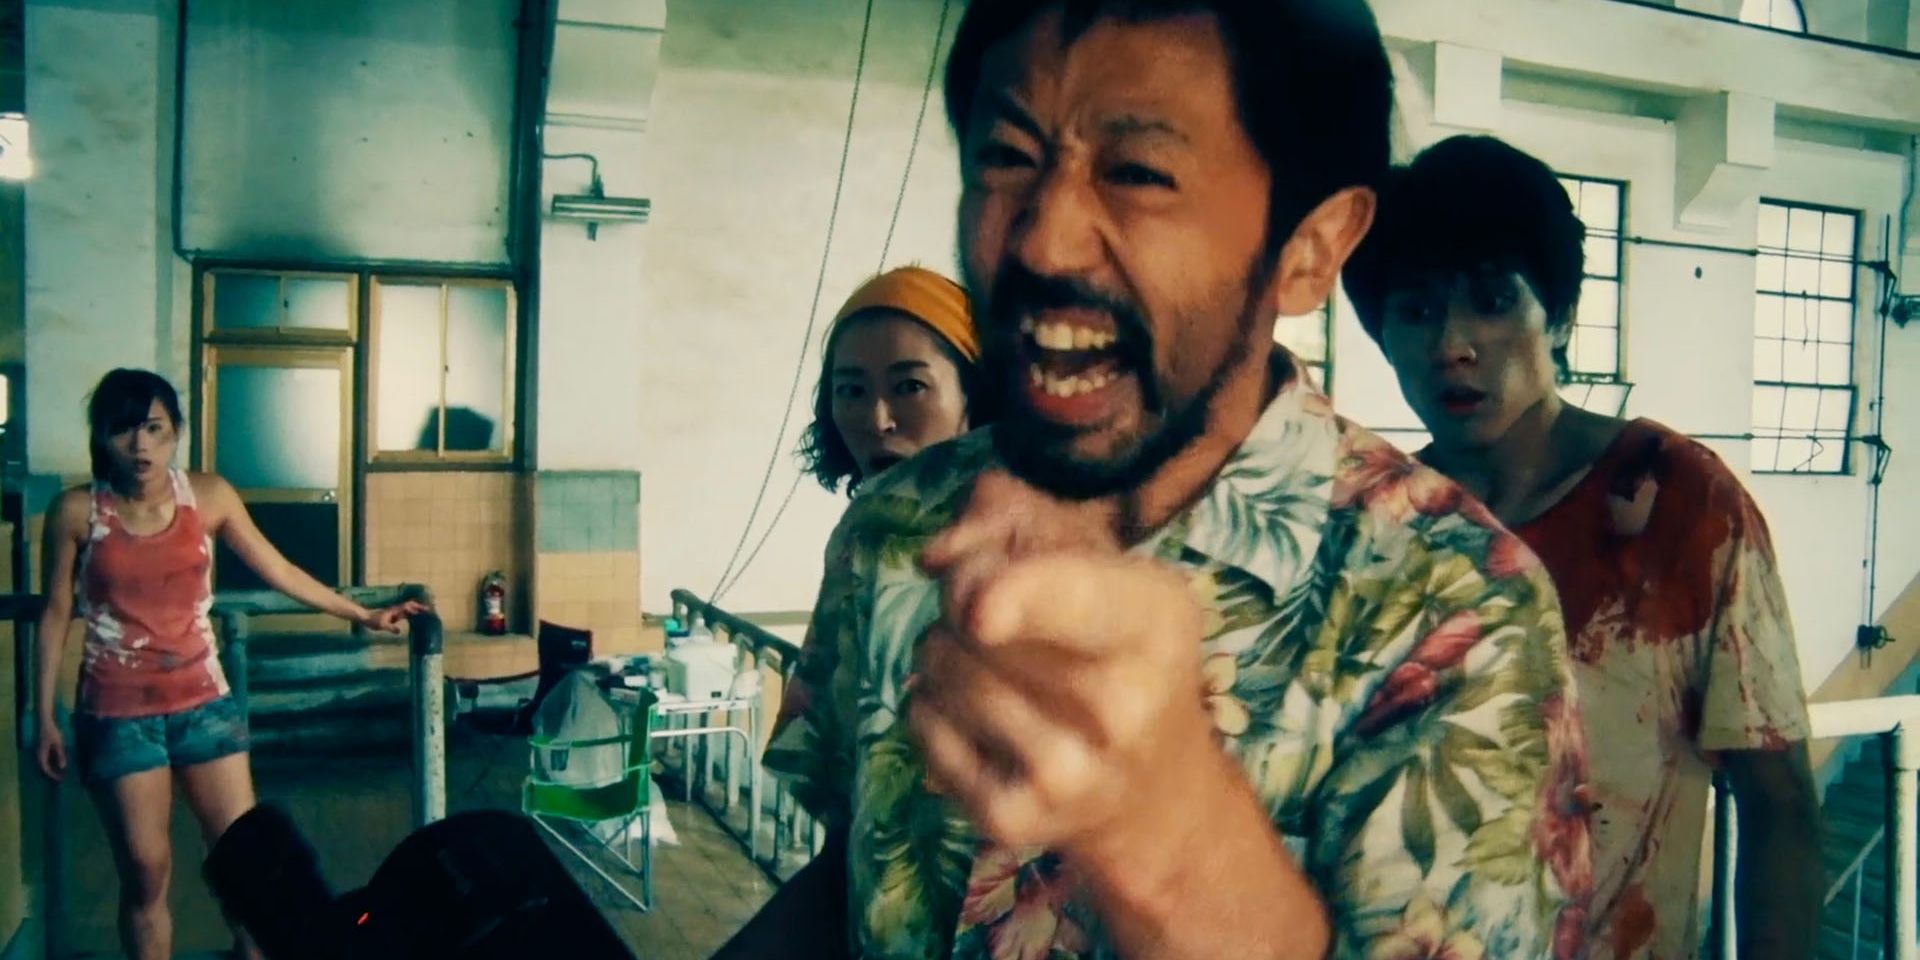 Хигураши предупреждает оператора не прекращать съемку, пока его ошеломленные члены съемочной группы наблюдают за сценой из фильма. 